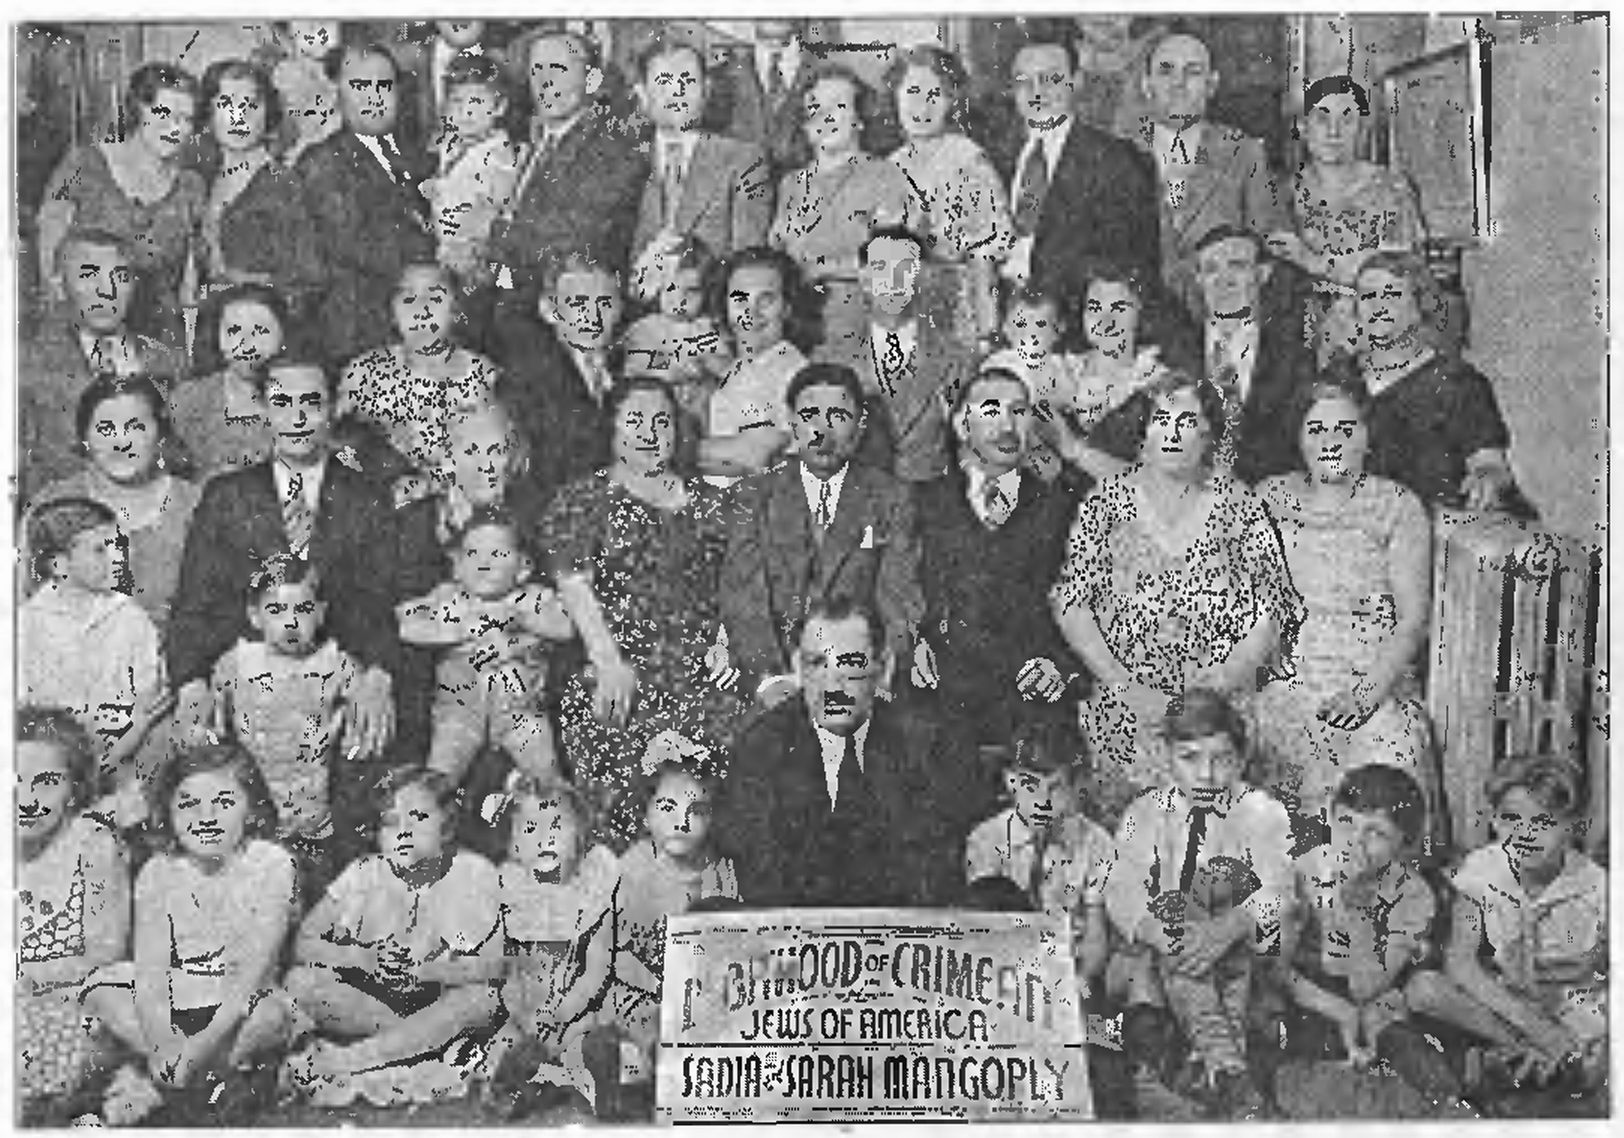 Собрание крымчакского землячестве в Америке, 1920-е гг. Из коллекции И. Рубина (Рабено)